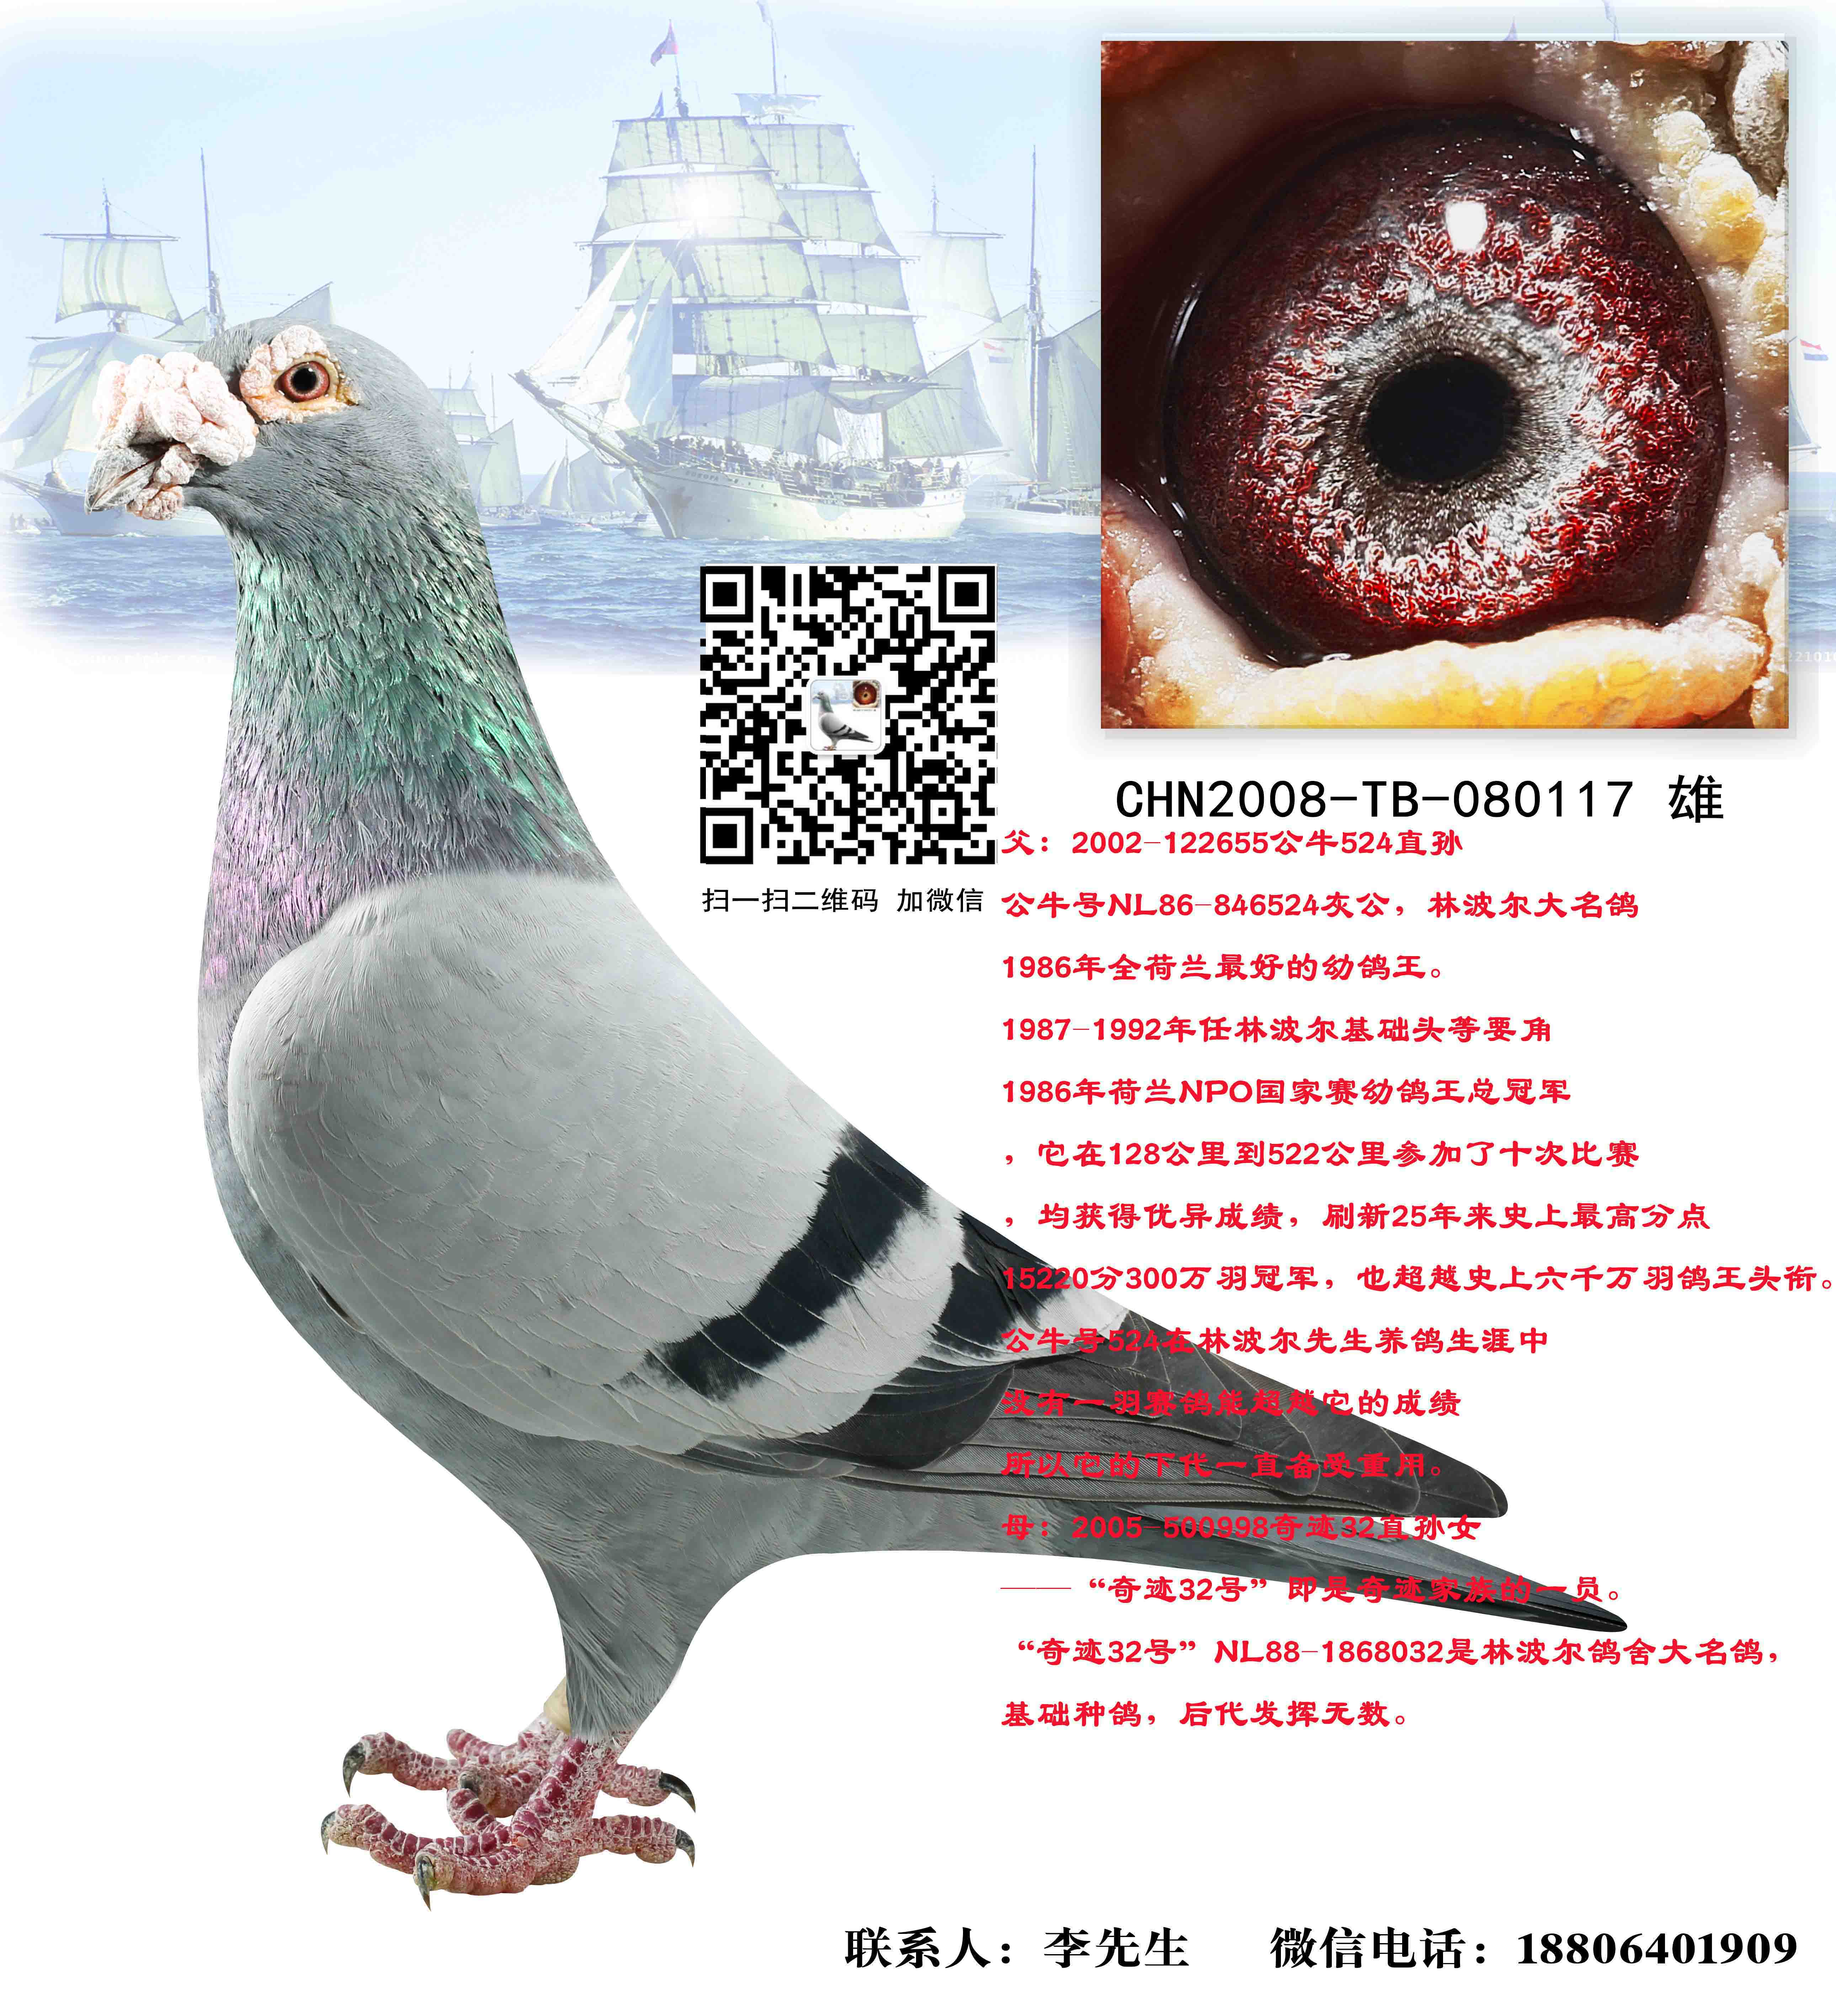 林波尔雄 出售-中国远洋鸽业-中信网爱鸽商城